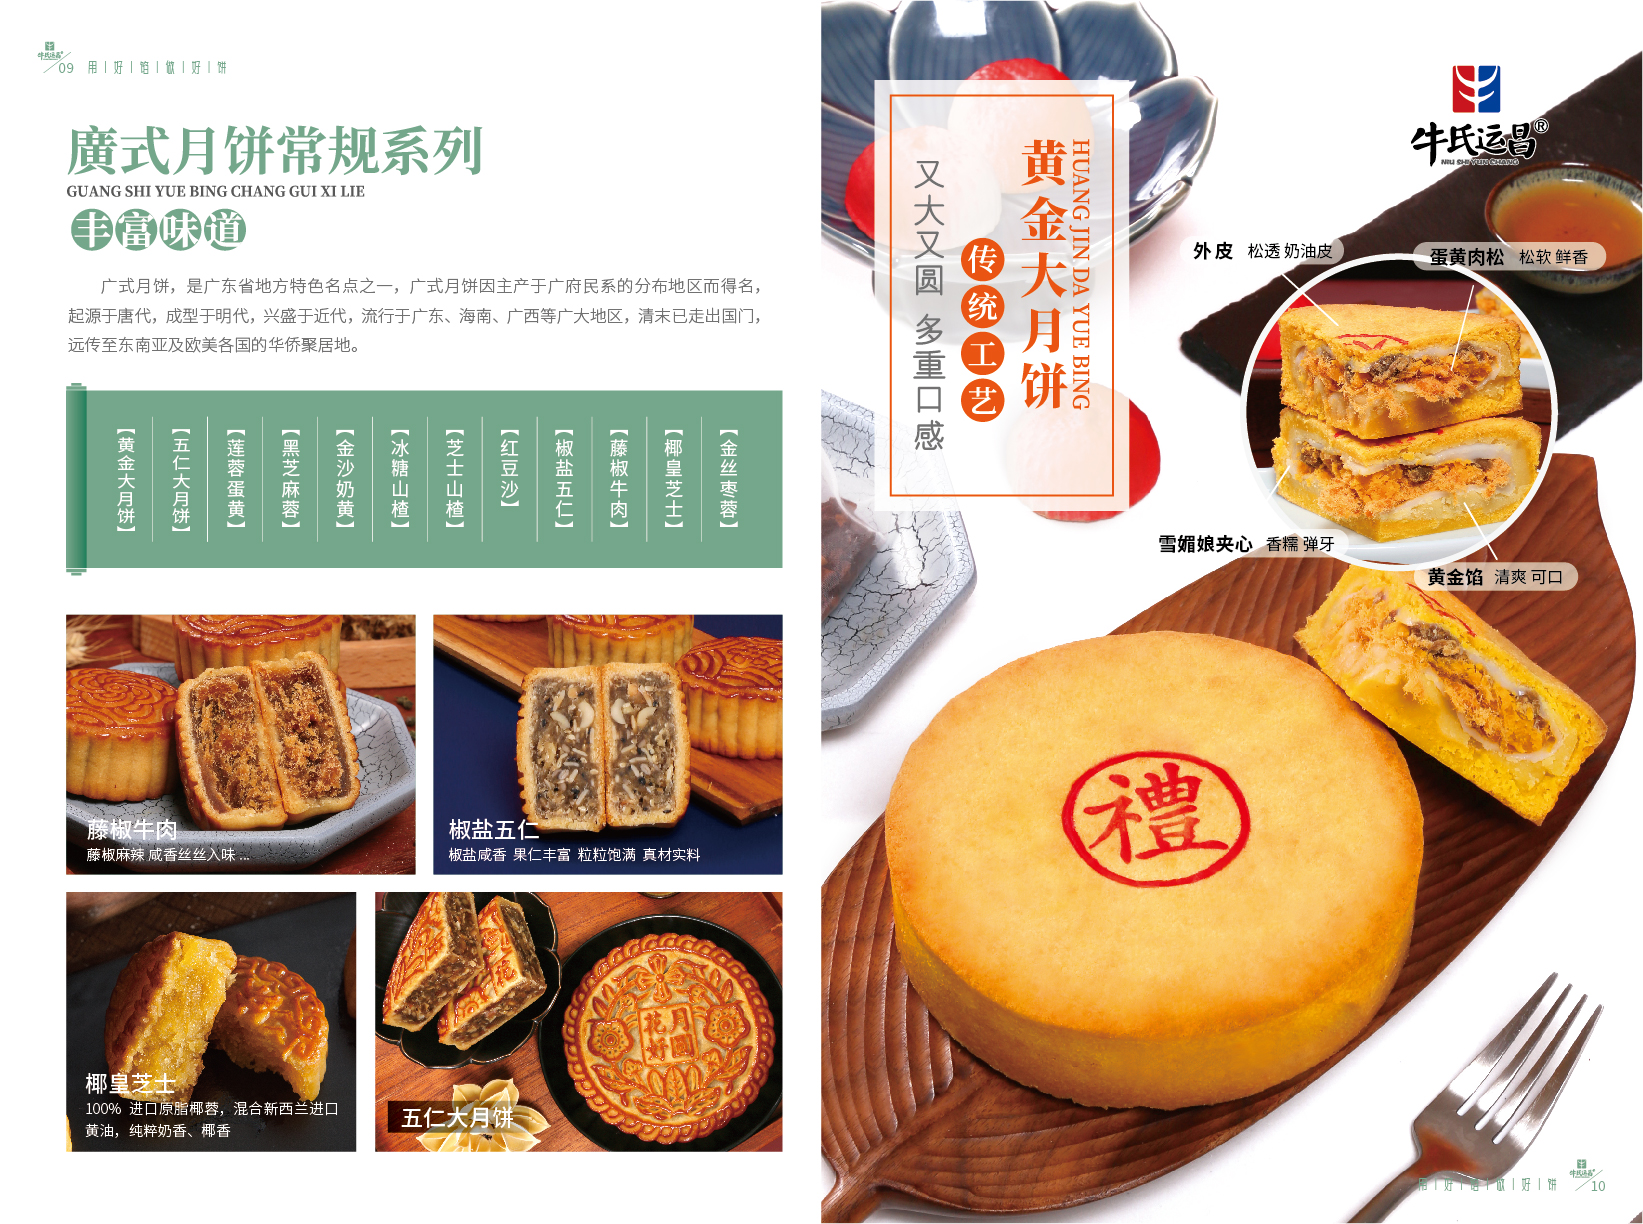 北京牛氏运昌（霸州）食品有限公司提供糕饼OEM代工 - FoodTalks食品供需平台